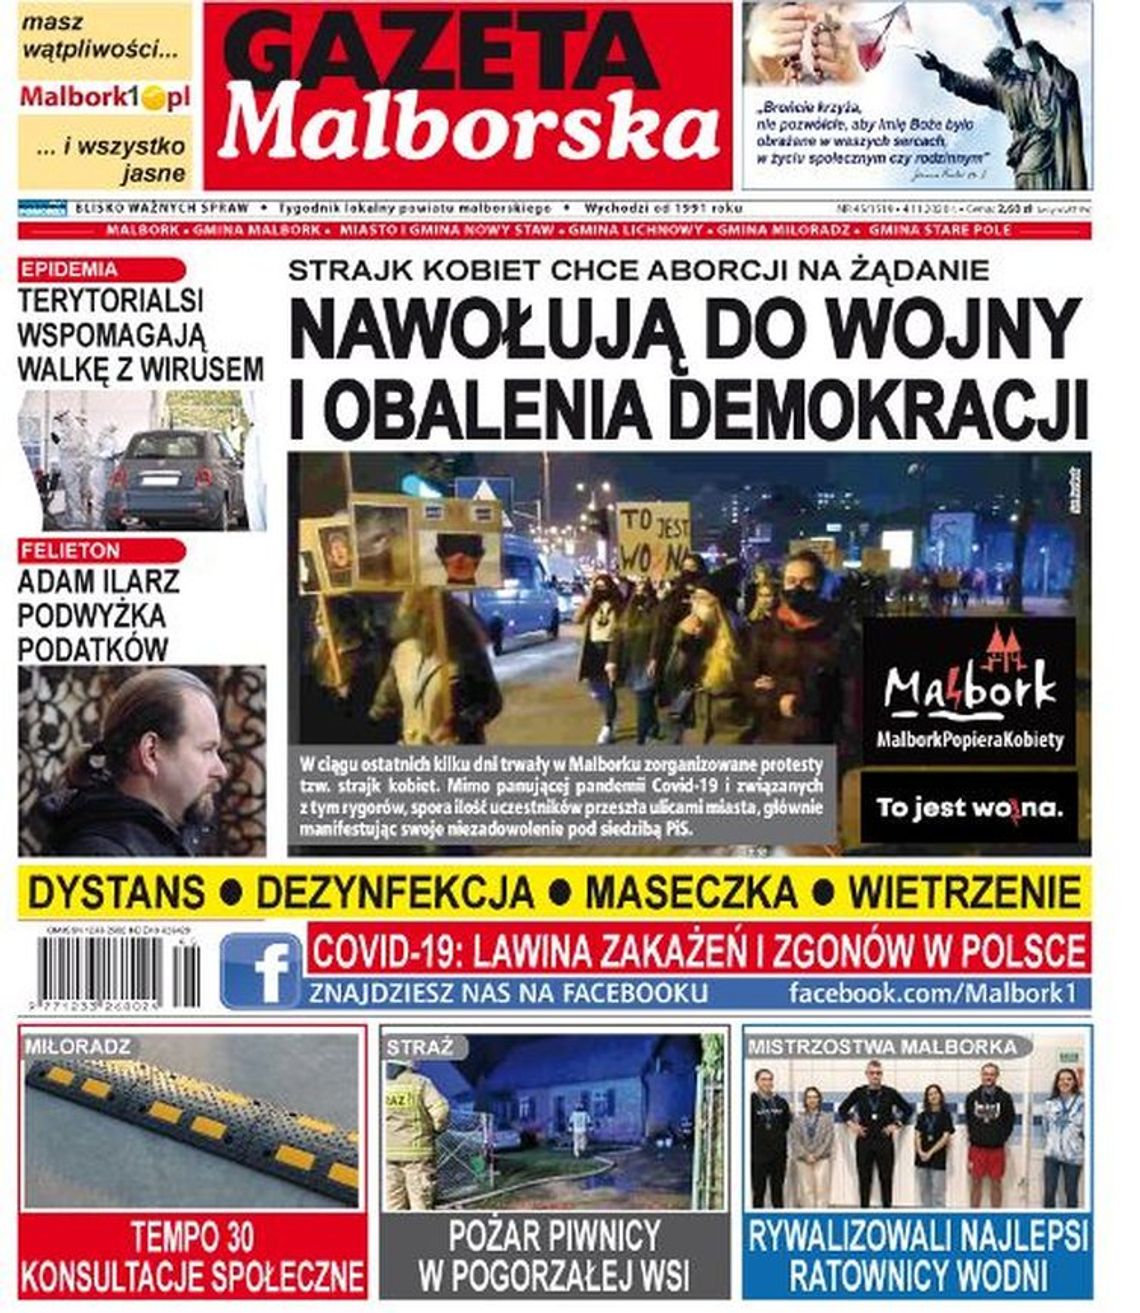 Nowy numer Gazety Malborskiej  już w sprzedaży!!! Najświeższe wiadomości z Malborka  i gmina naszego powiatu dostępne w Twoim kiosku. Co w środku?